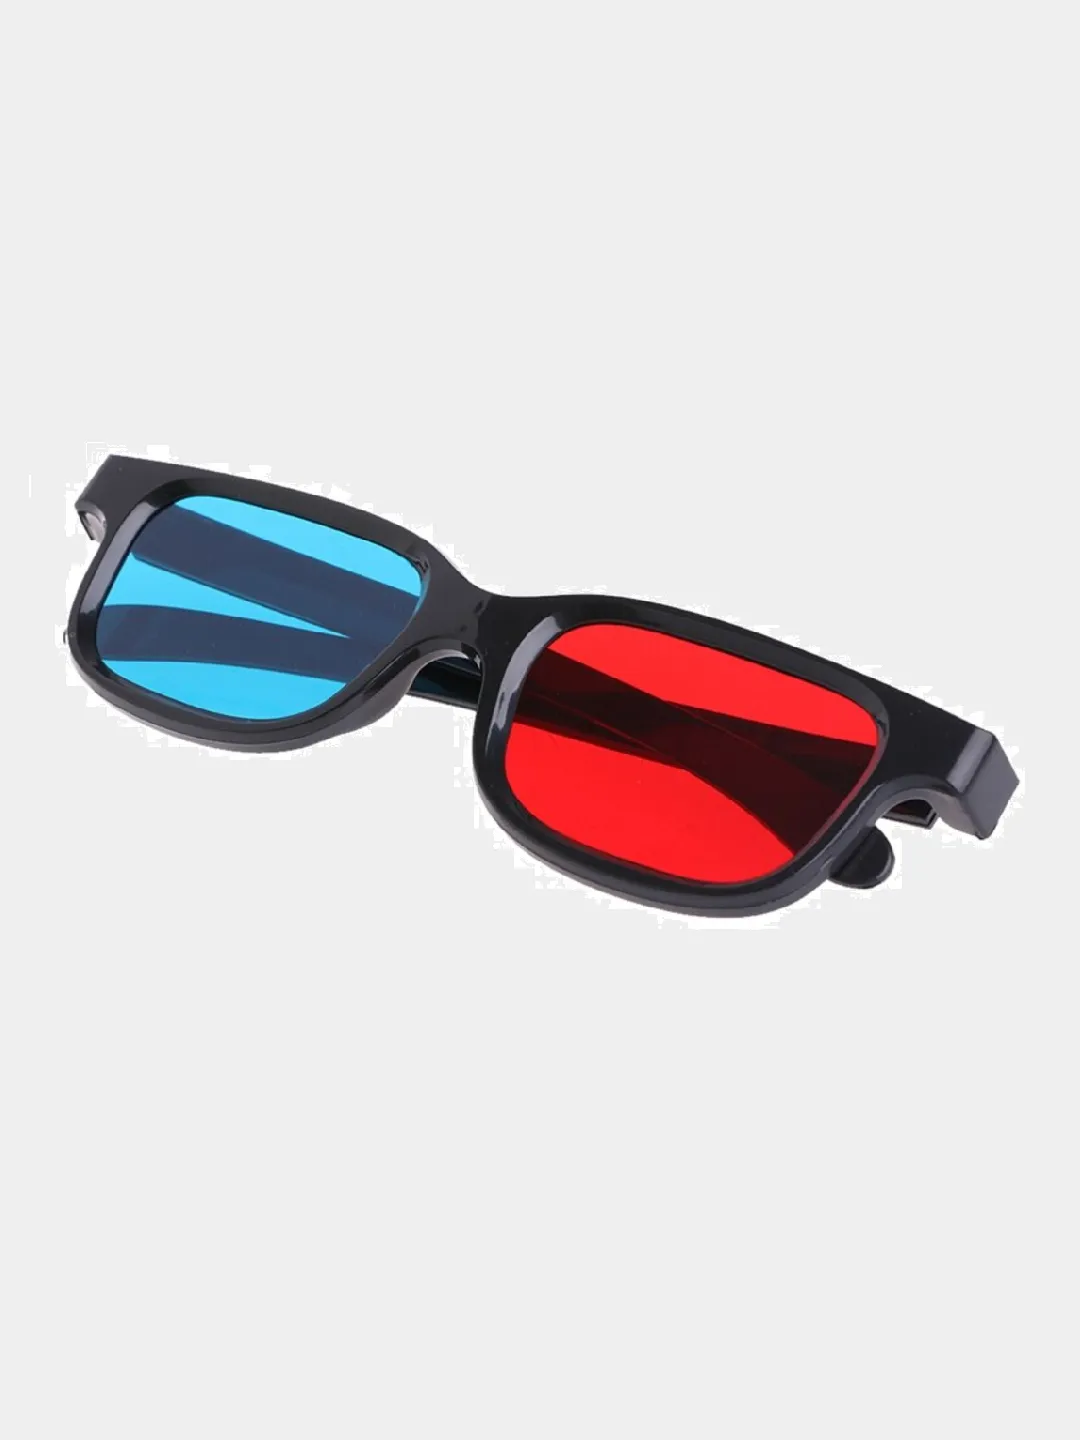 Очки з д. Анаглифные 3d очки красный/синий. 3d очки для кинотеатра для очковых. 3d очки для КМП. Anaglyph очки.